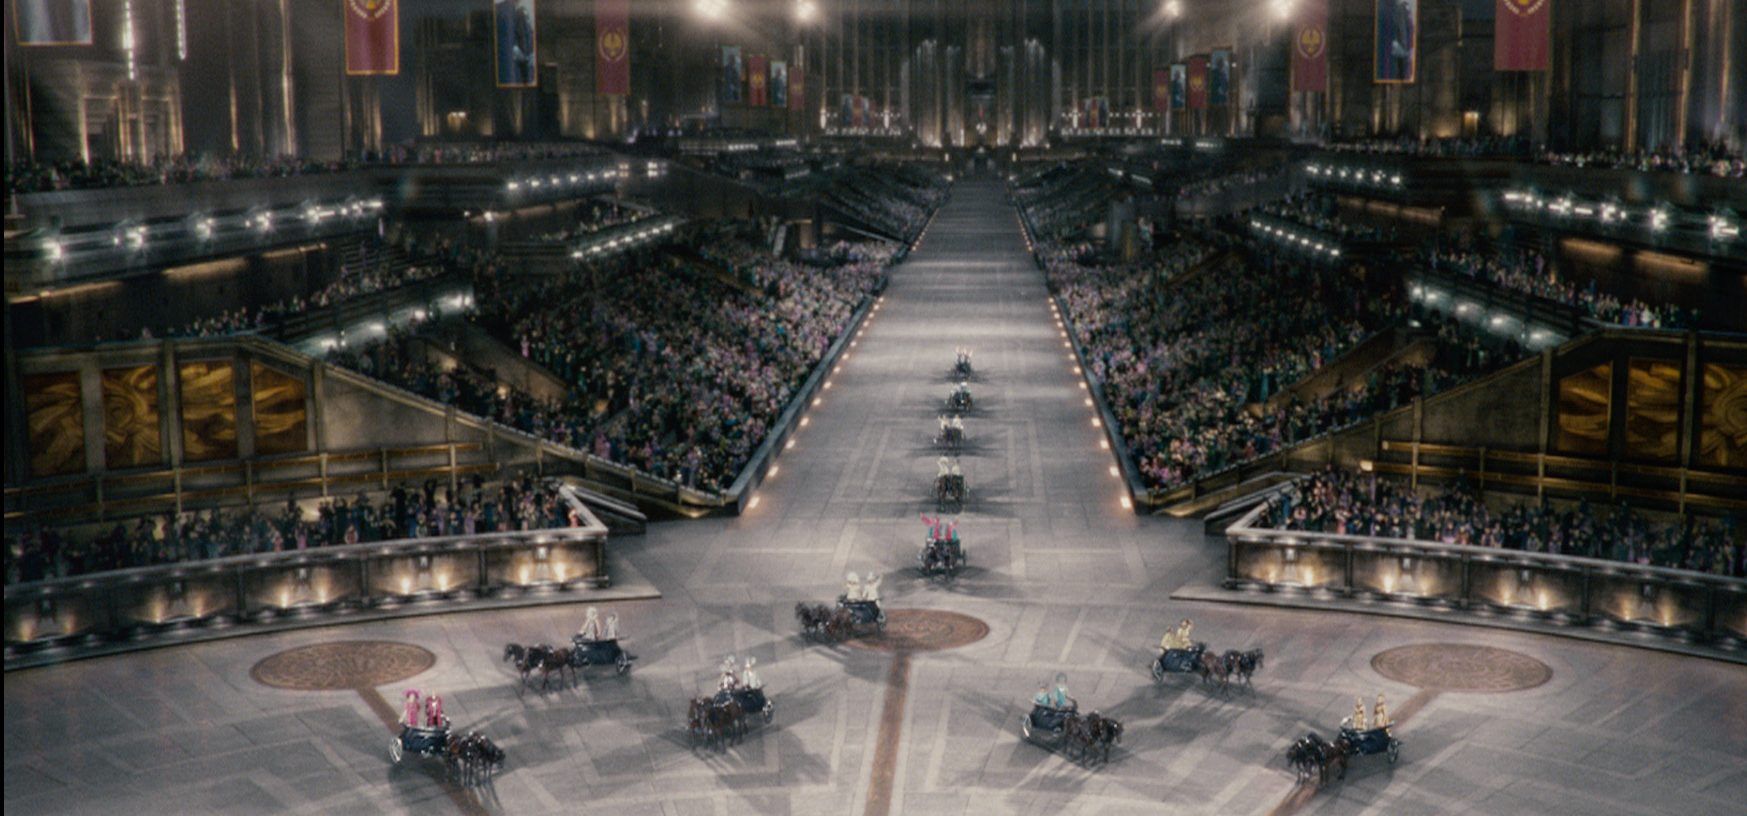 The-Hunger-Games-Chariot-Ride-scene-e1540310727791.jpg